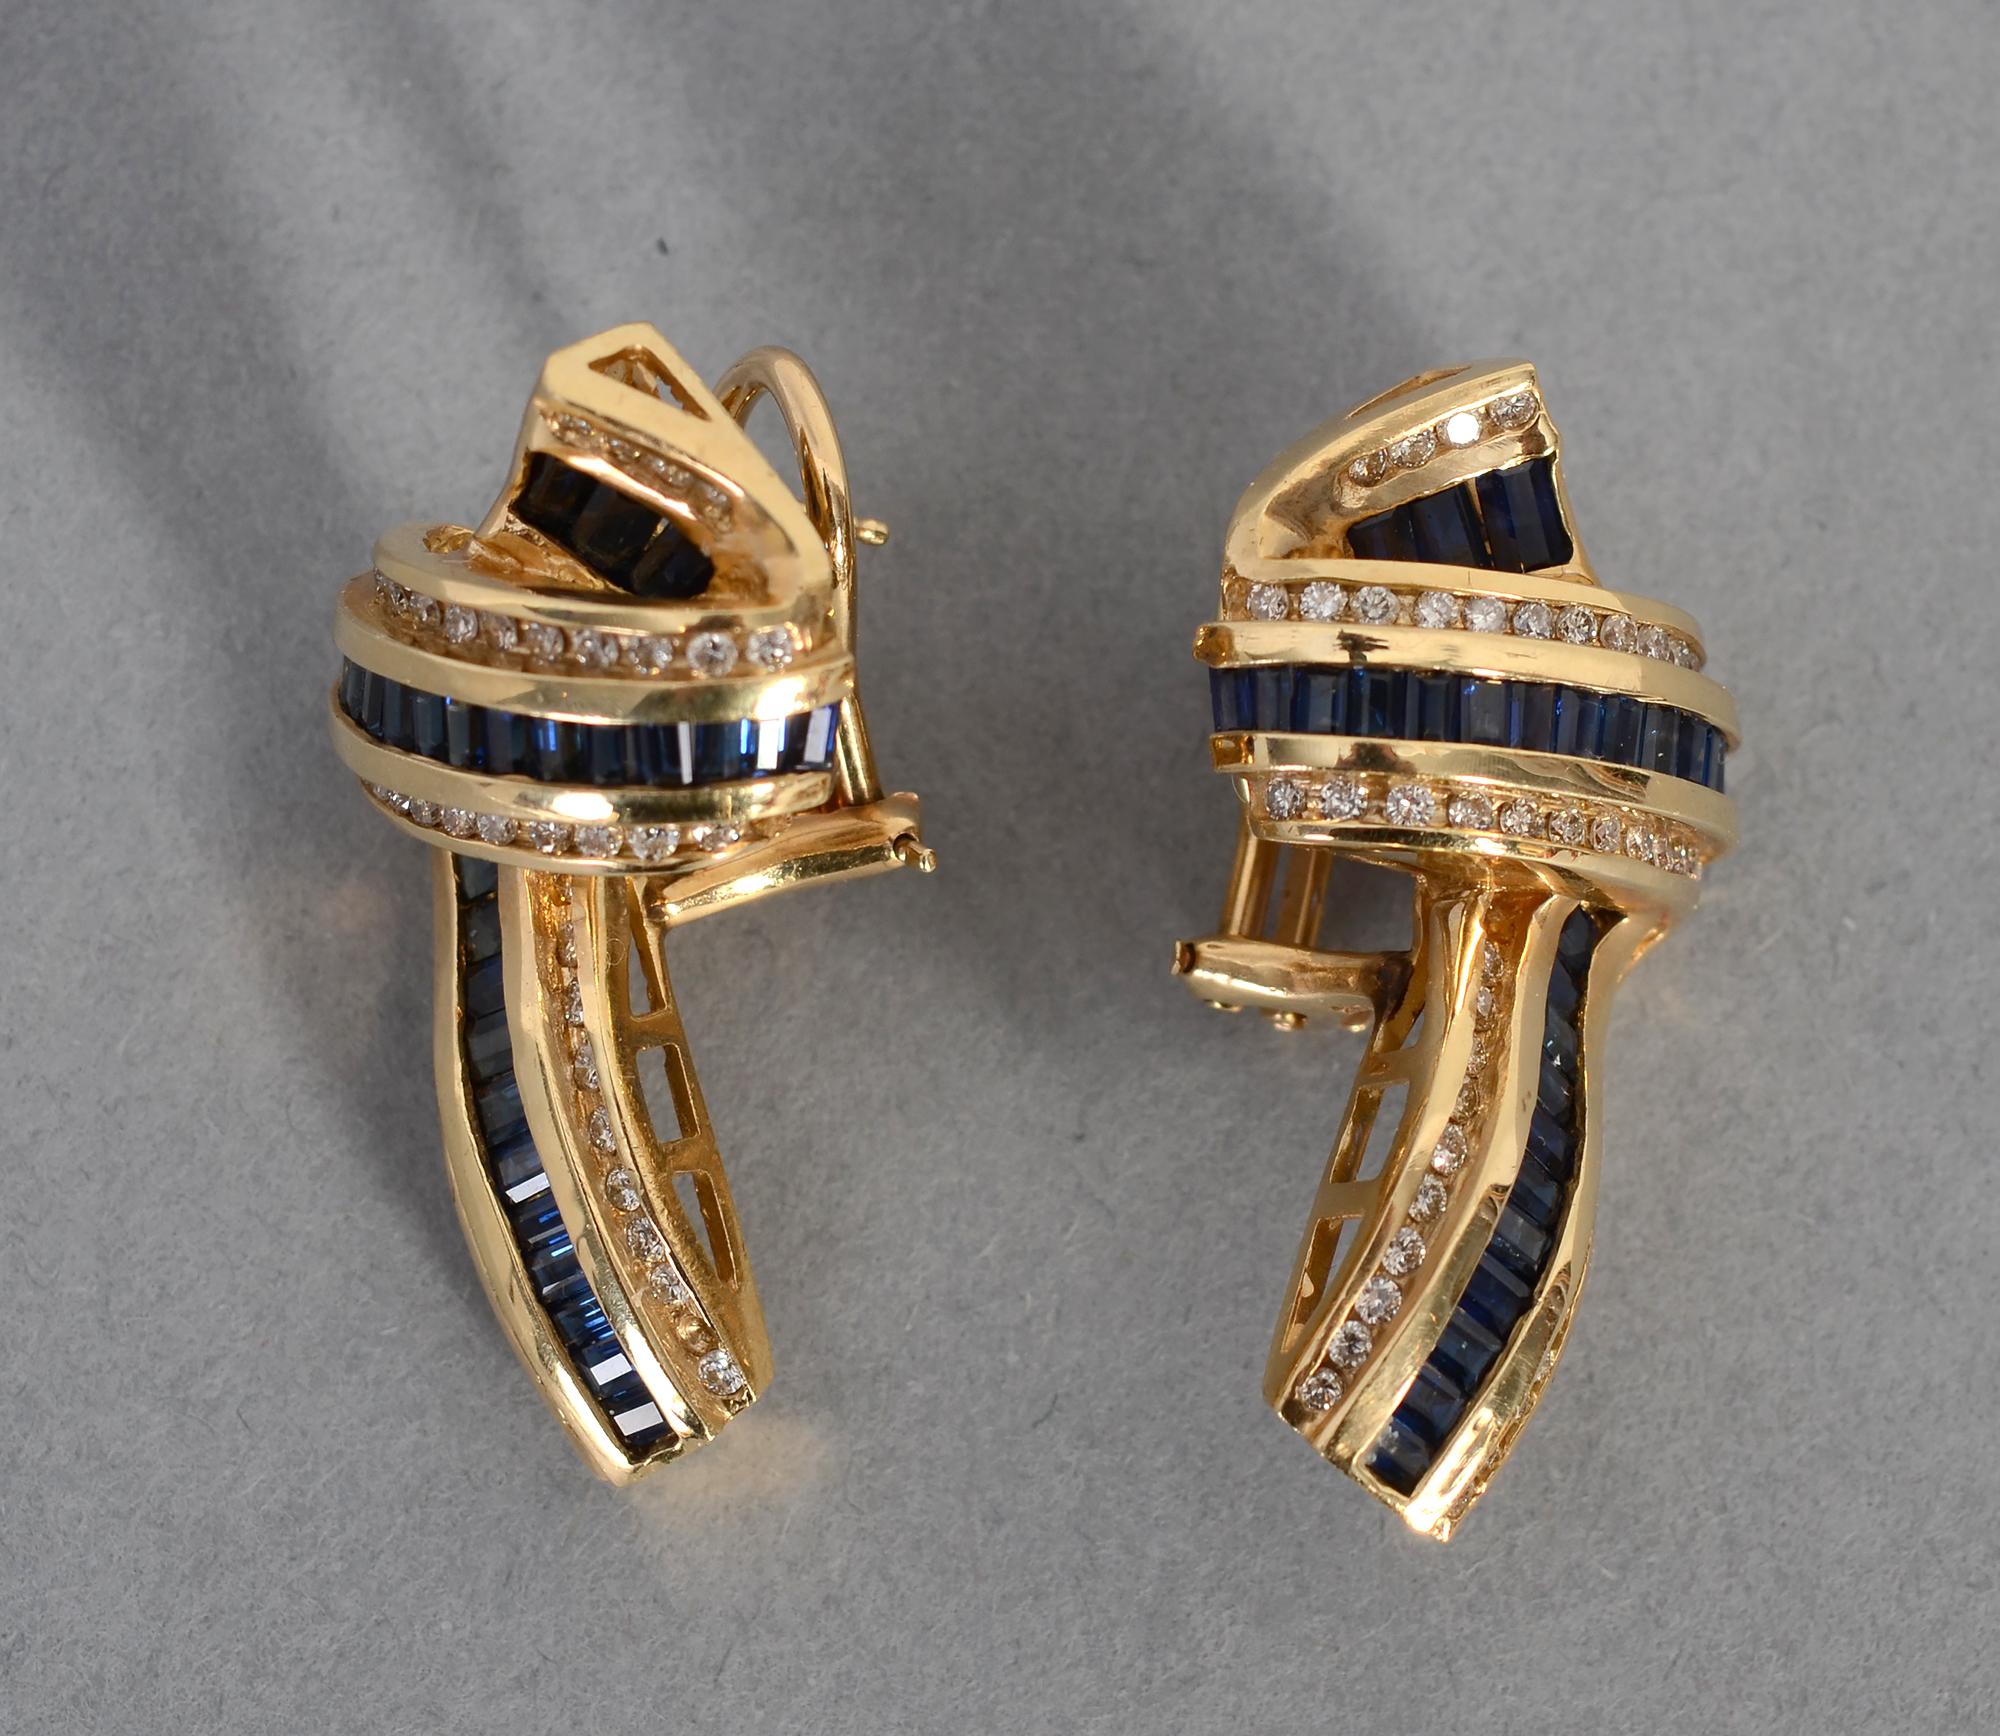 Boucles d'oreilles en saphir et diamant serties en or 14 carats avec l'aspect ondulant d'un ruban. Ils comportent 110 diamants ronds d'un poids total d'environ 1 carat. Les dos sont des clips et des poteaux. Les boucles d'oreilles sont très proches